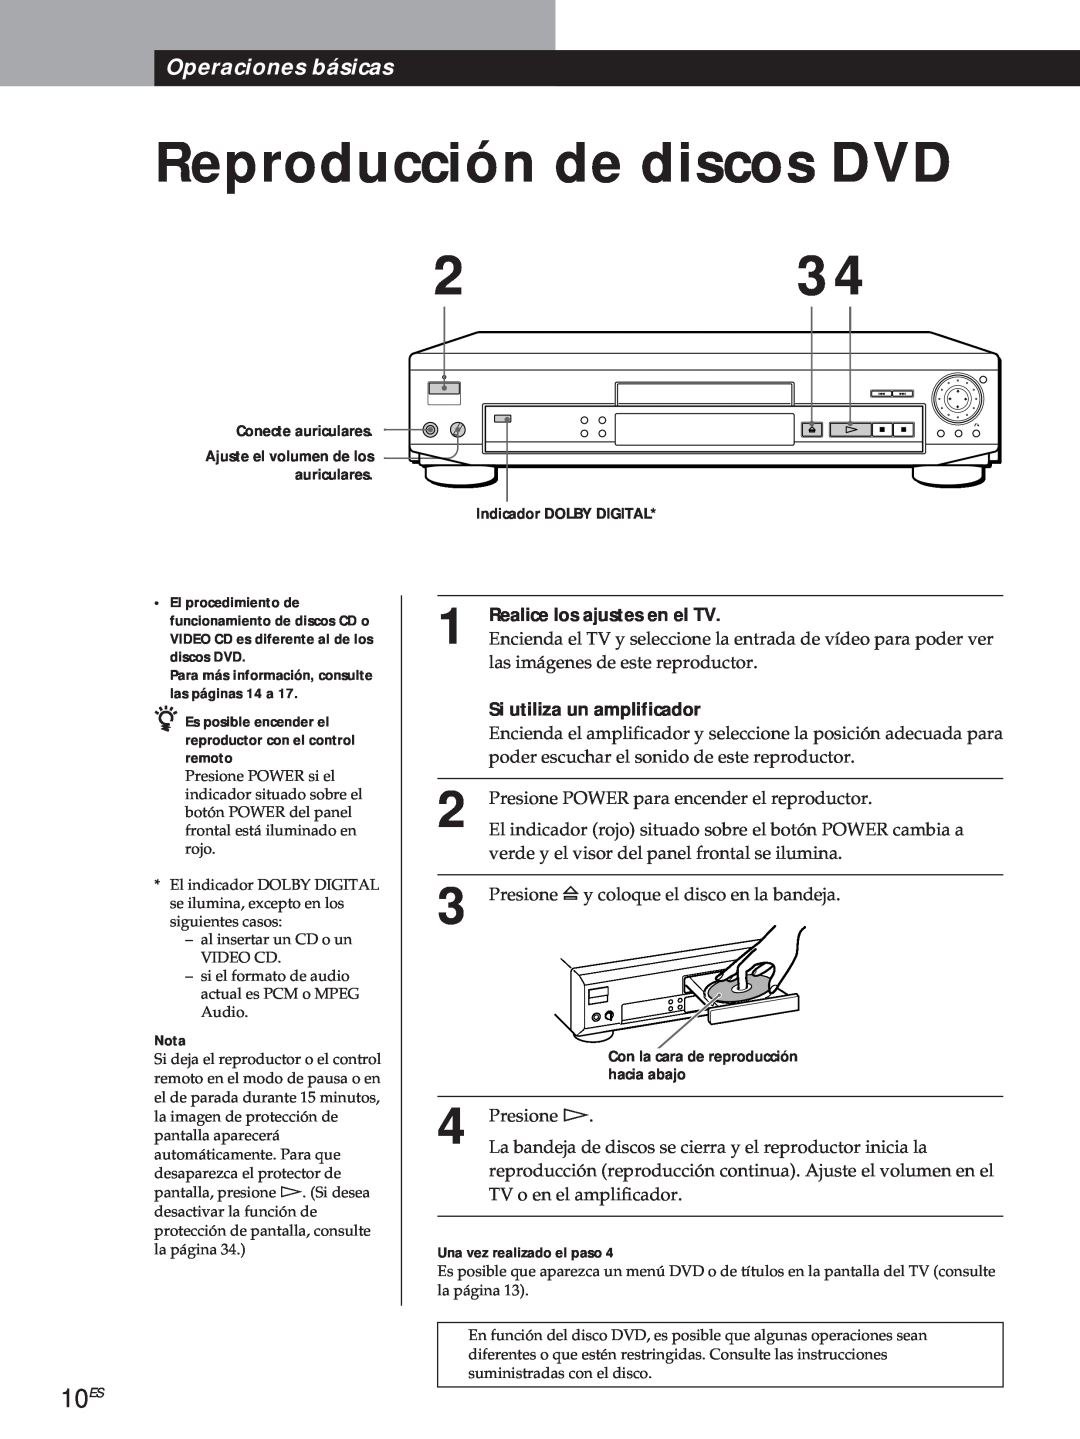 Sony DVP-S500D Reproducción de discos DVD, 10ES, Operaciones básicas, Presione á, Conecte auriculares, Nota, hacia abajo 